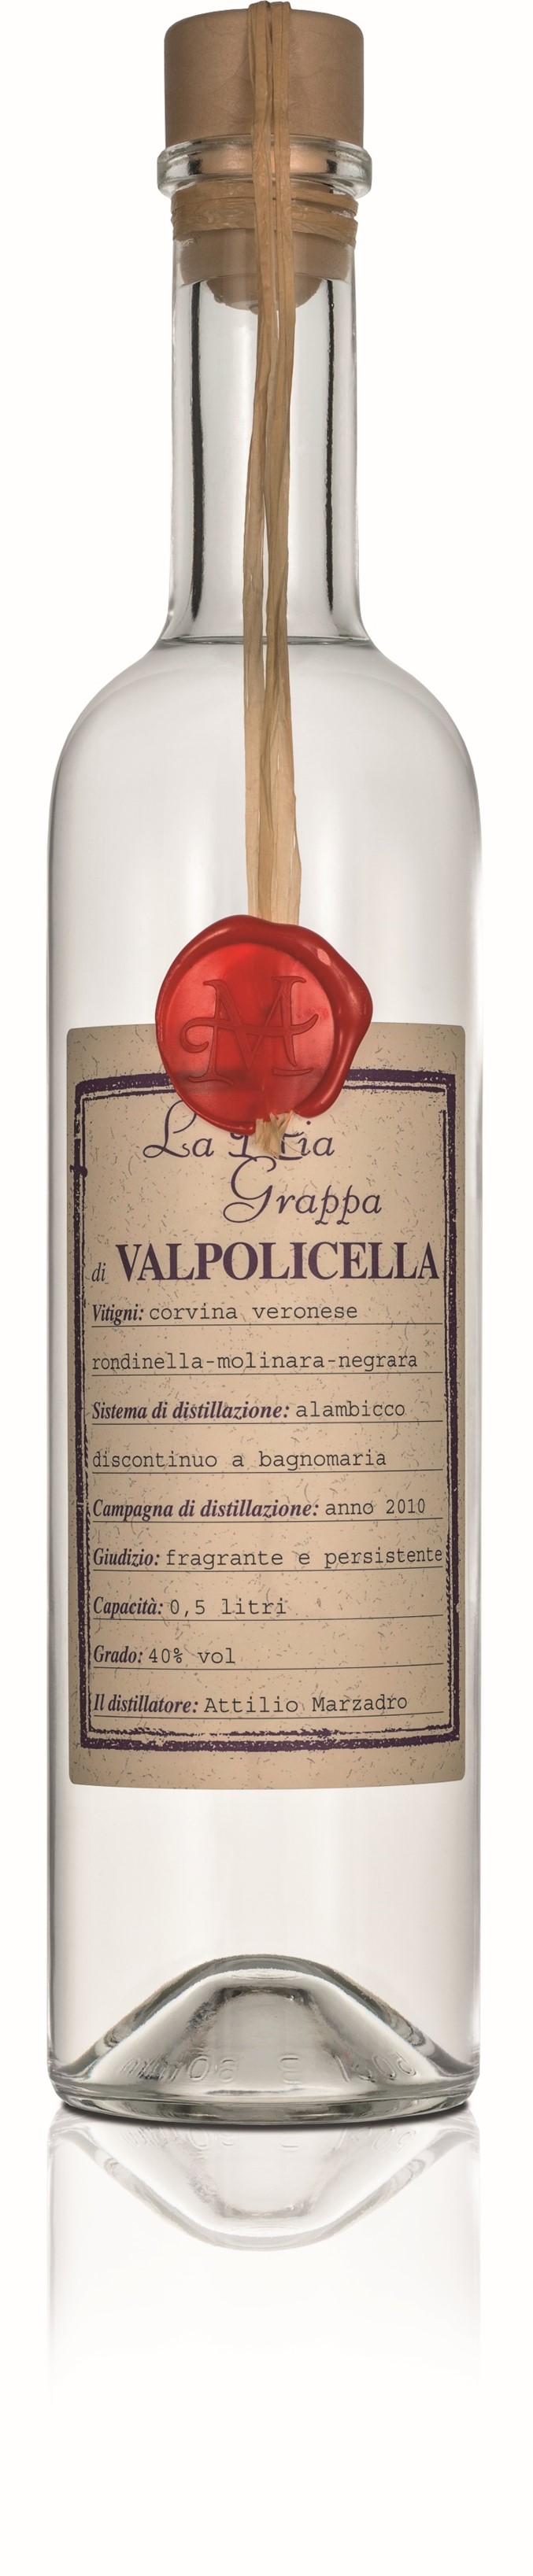 La Mia Grappa di Valpolicella 0,5l 40% | Marzadro | Vino Italia